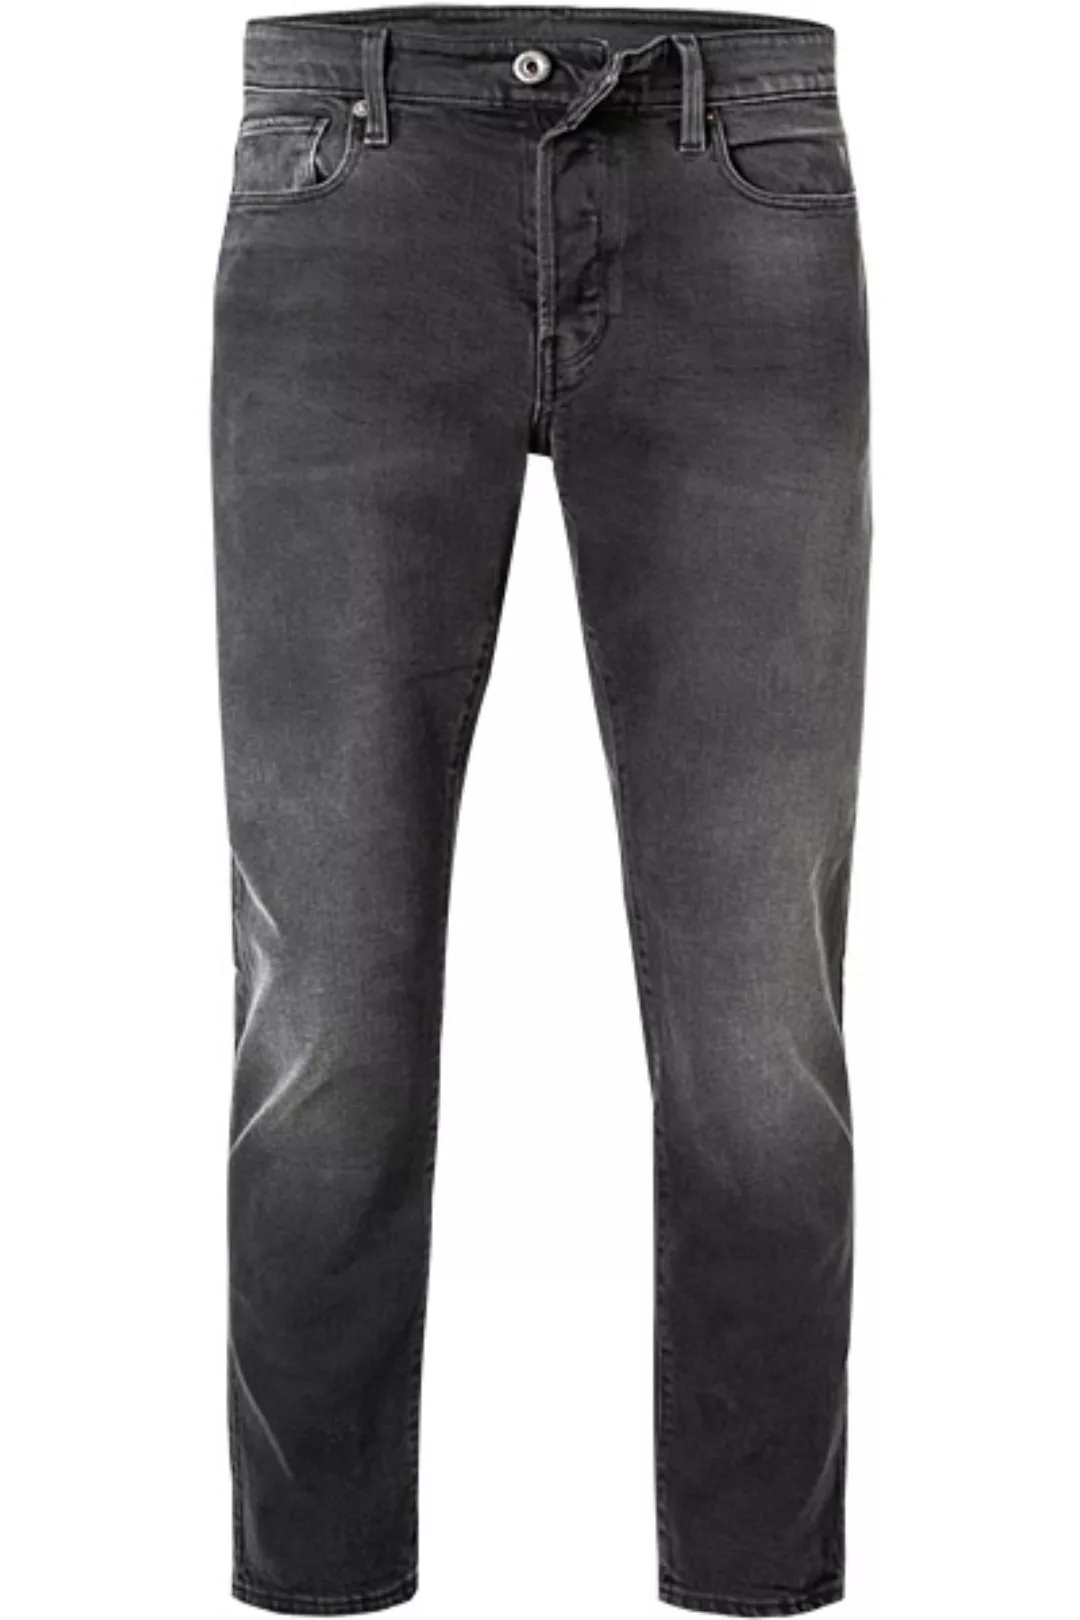 G-STAR Jeans 3301 Straight Tapered 51003-B455/A797 günstig online kaufen